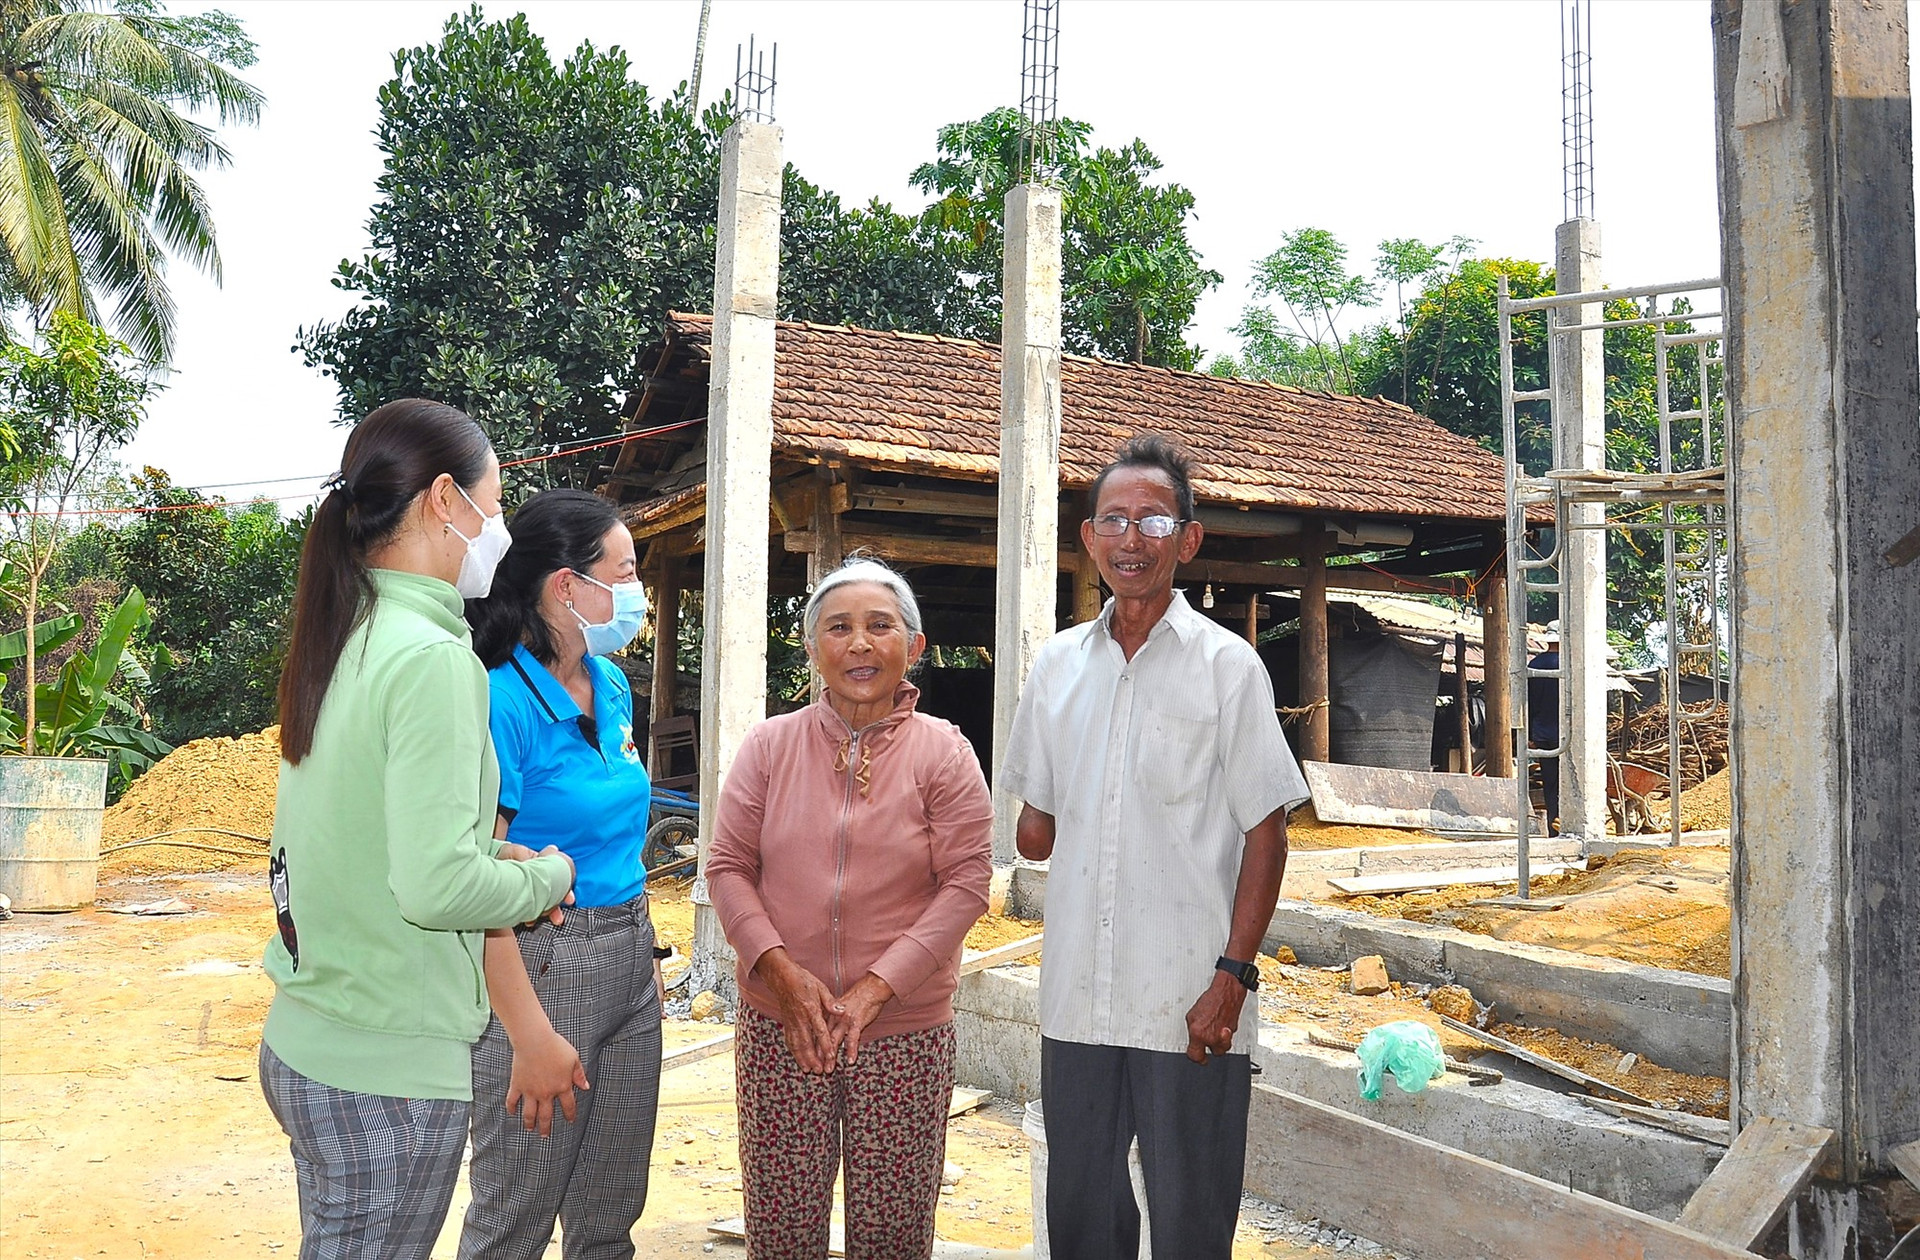 Vợ chồng bà Nguyễn Thị Chấn nói chuyện với cán bộ Hội LHPN xã Hiệp Thuận đến thăm. Phía sau là ngôi nhà mới của vợ chồng bà đang được xây dựng. Ảnh: P.V